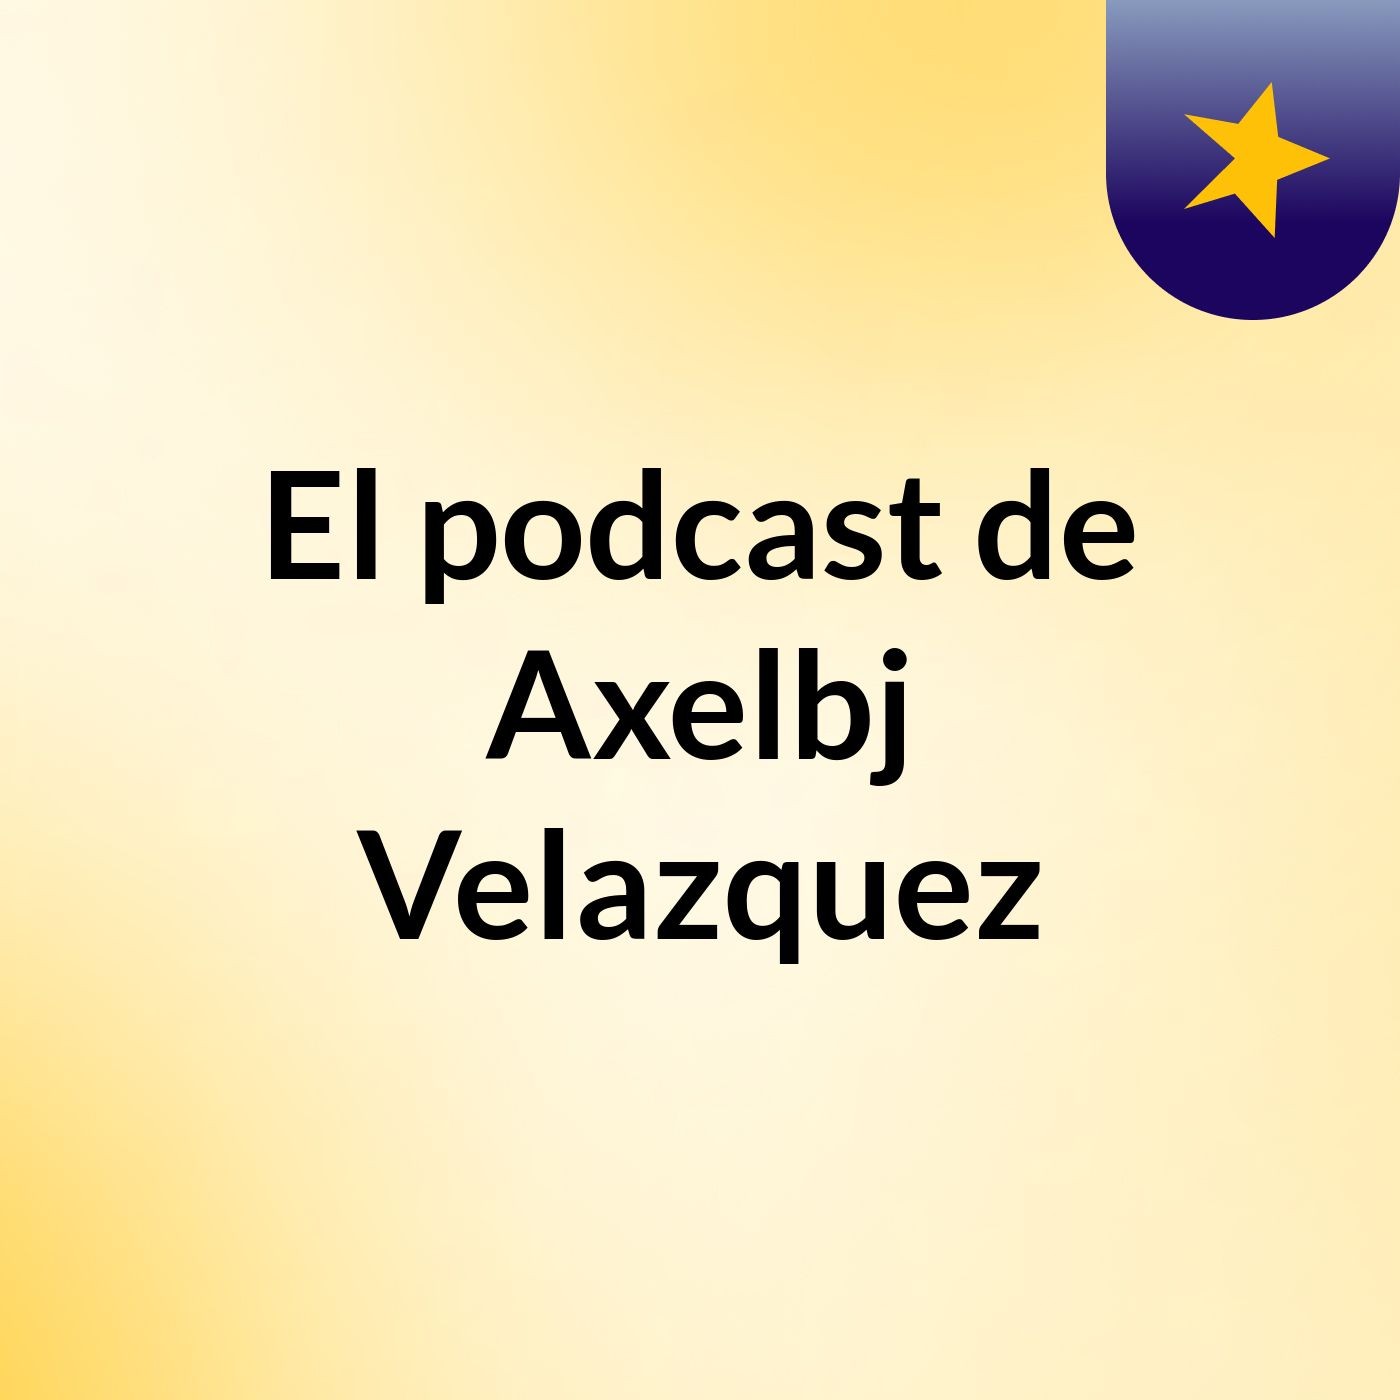 El podcast de Axelbj Velazquez